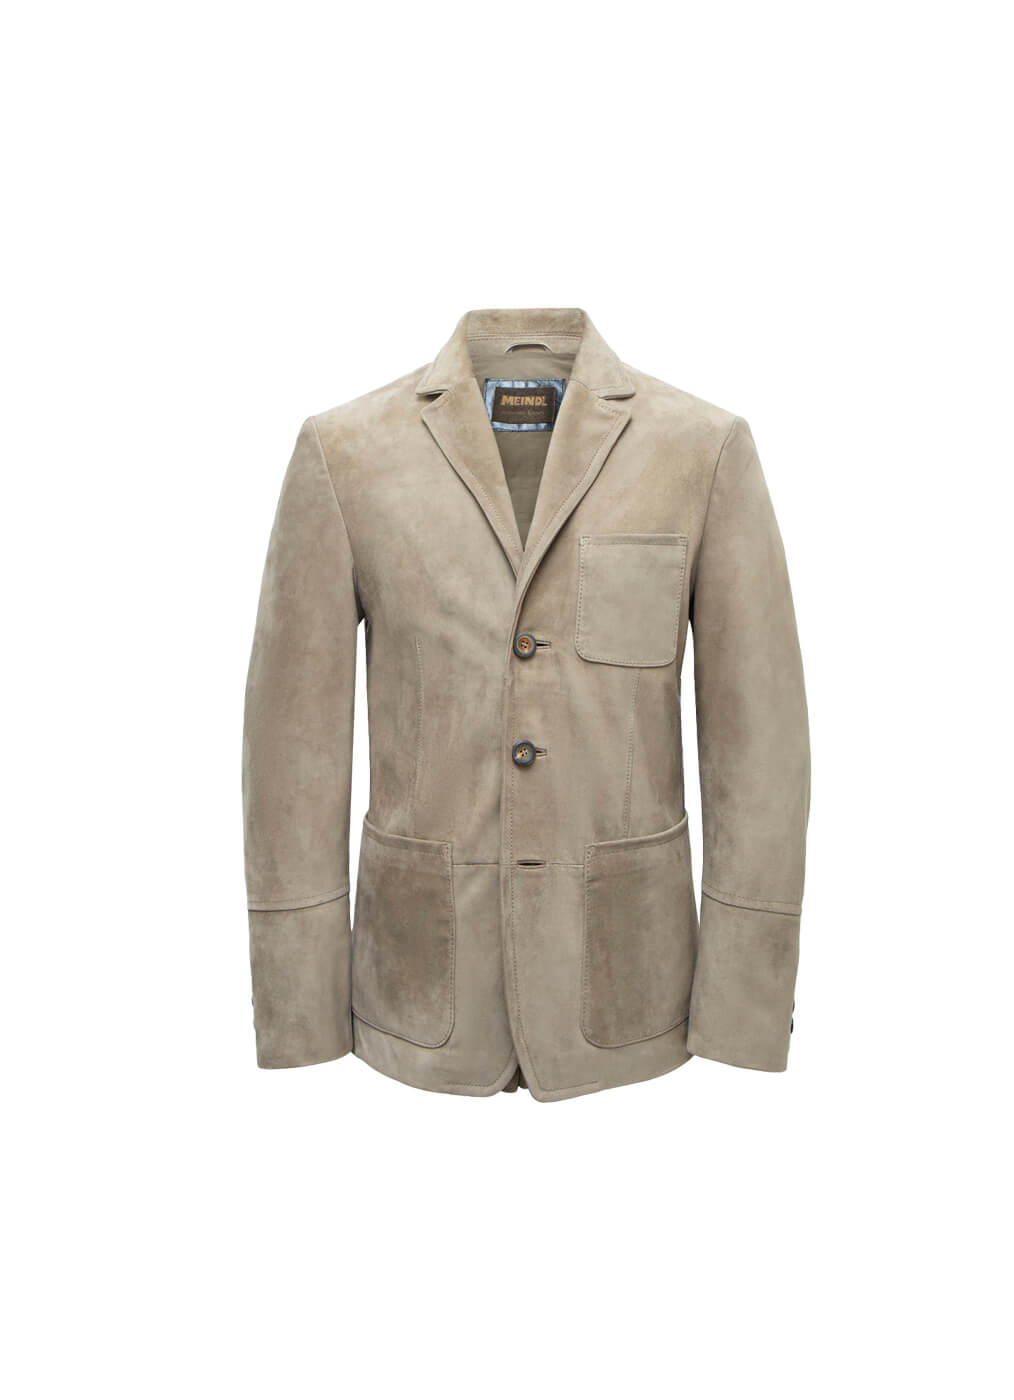 Goat Leather Jacket “Hamptons”, rinde